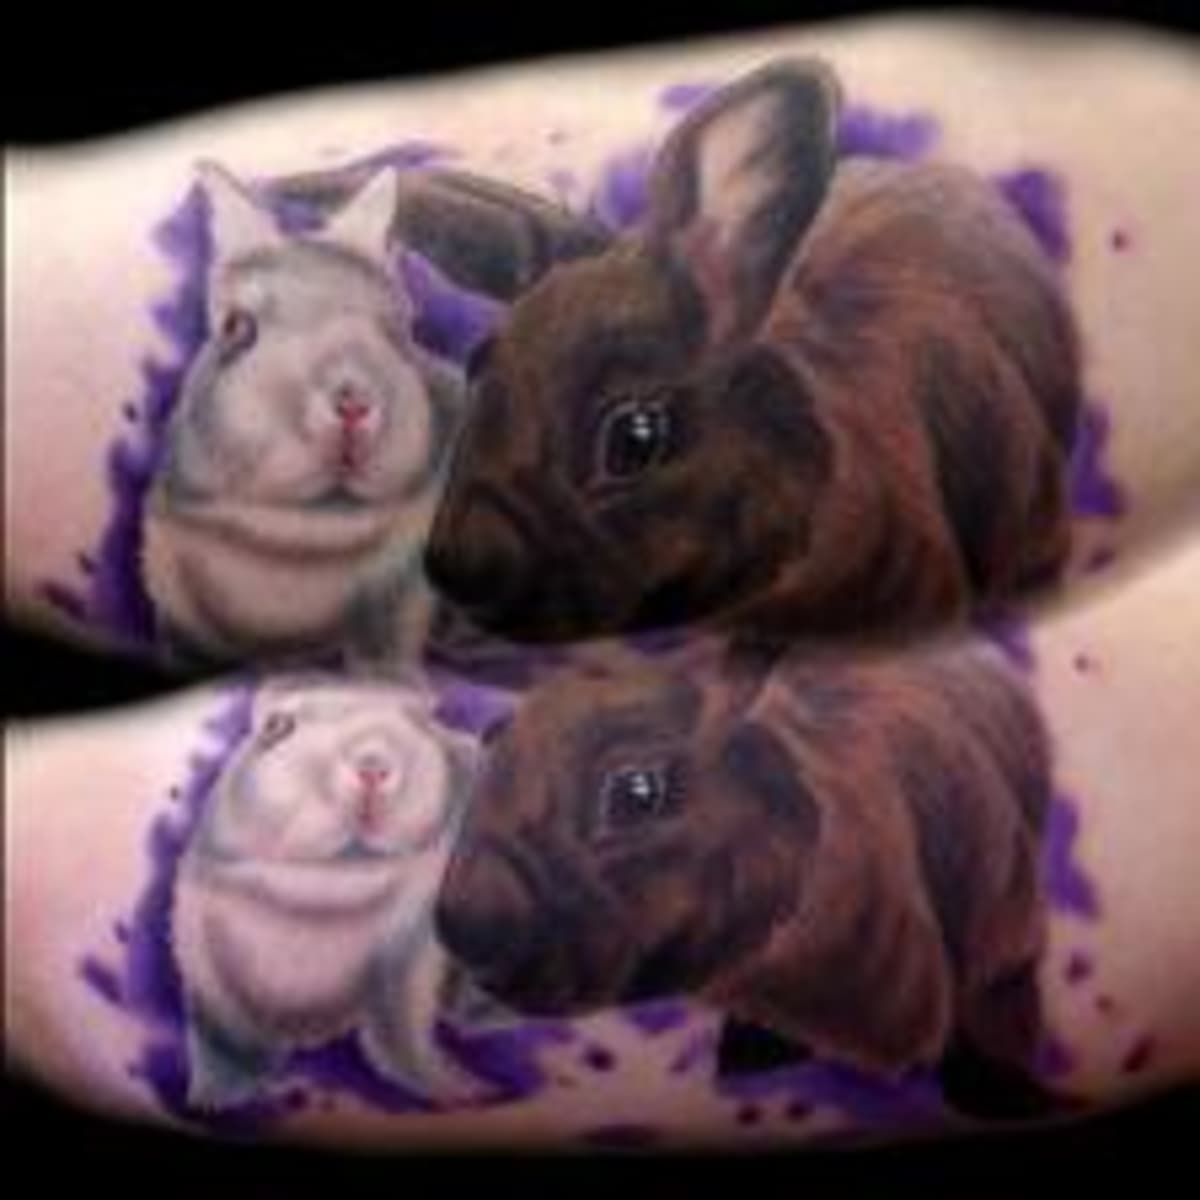 Explore the 40 Best rabbit Tattoo Ideas (2019) • Tattoodo